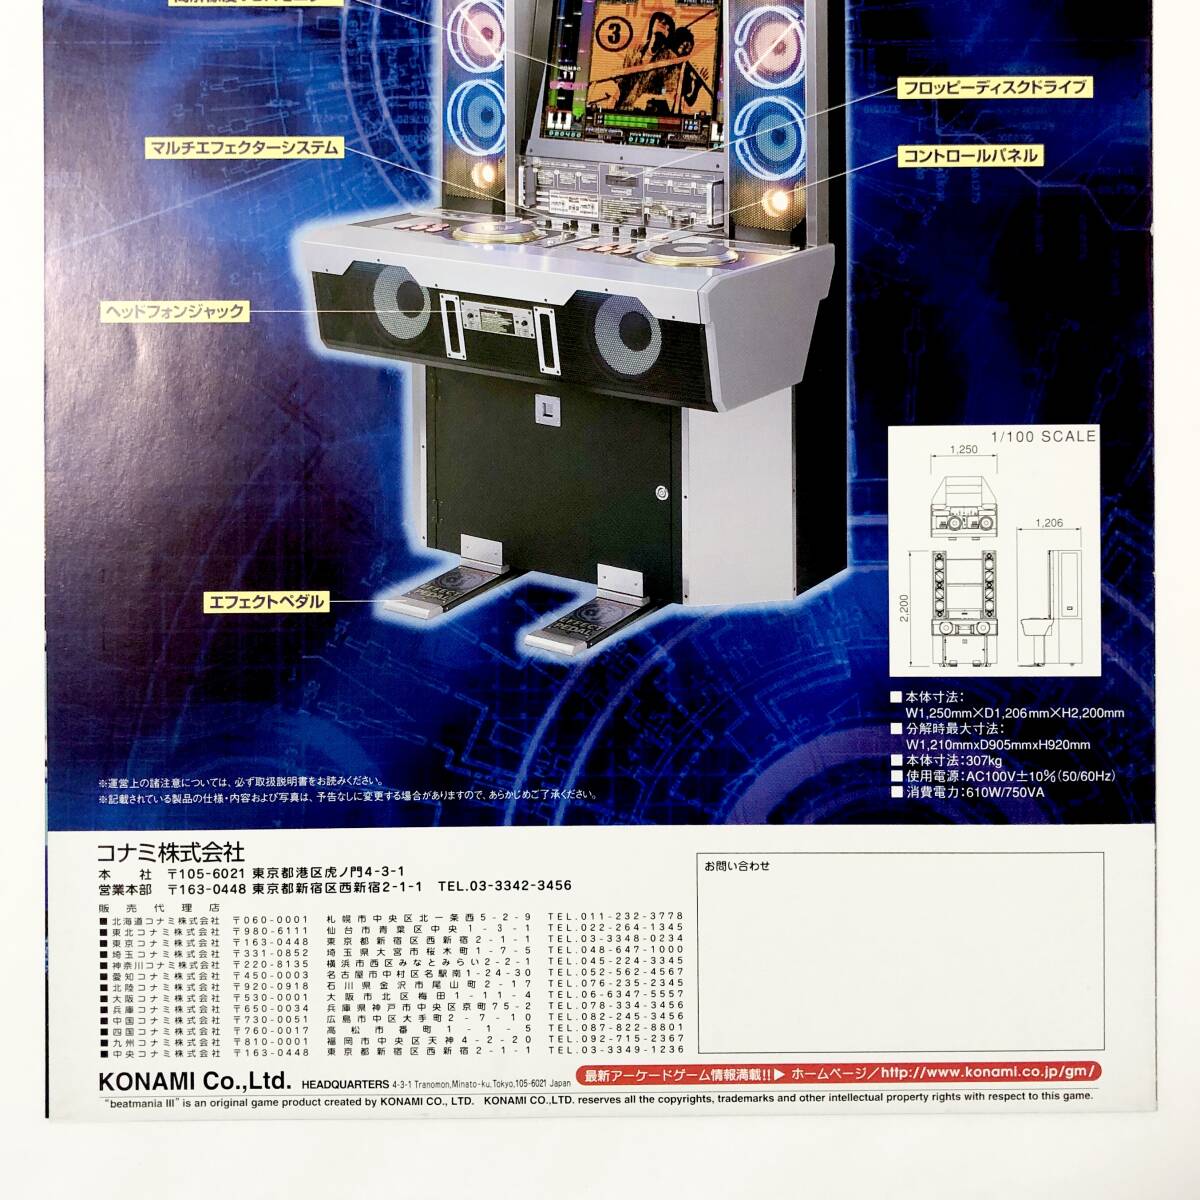 ビートマニア スリー A4サイズ チラシ コナミ ビーマニ アーケード フライヤー 広告 Beatmania Ⅲ Promo Ad Flyer Konami Arcade Game_画像8